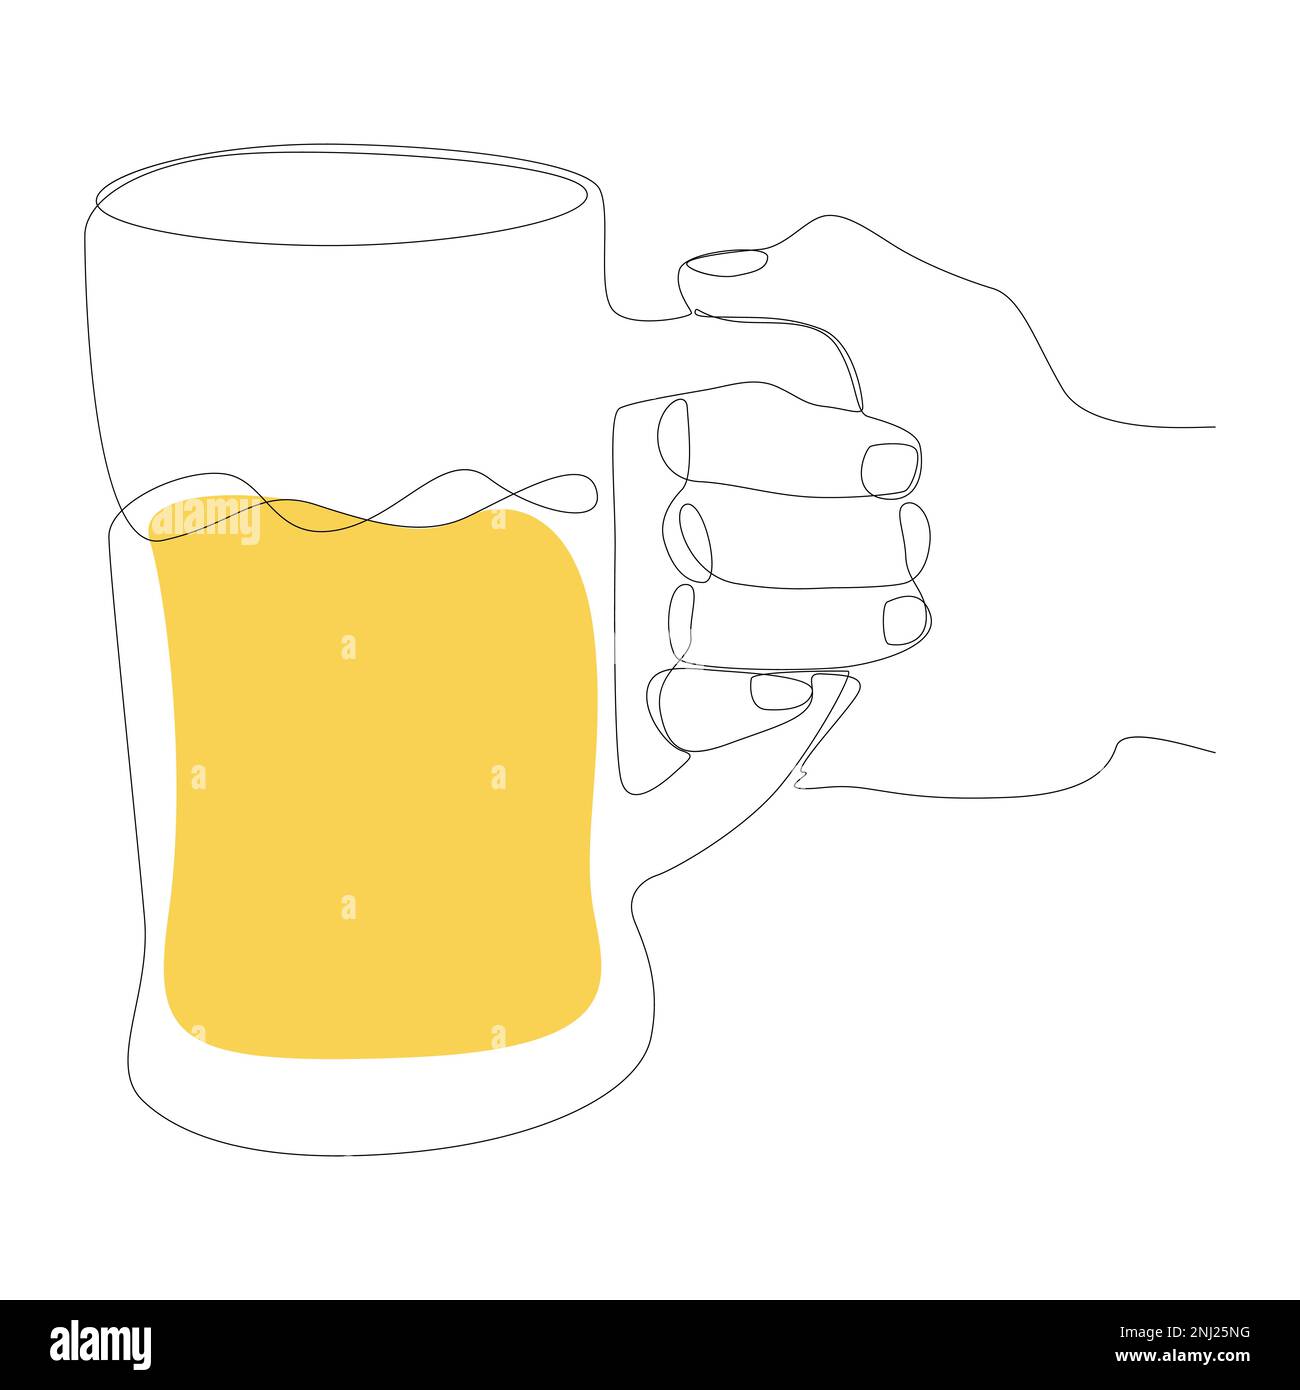 Une main continue avec de la bière. Concept de vecteur d'illustration à trait fin. Dessin de contour idées créatives. Illustration de Vecteur